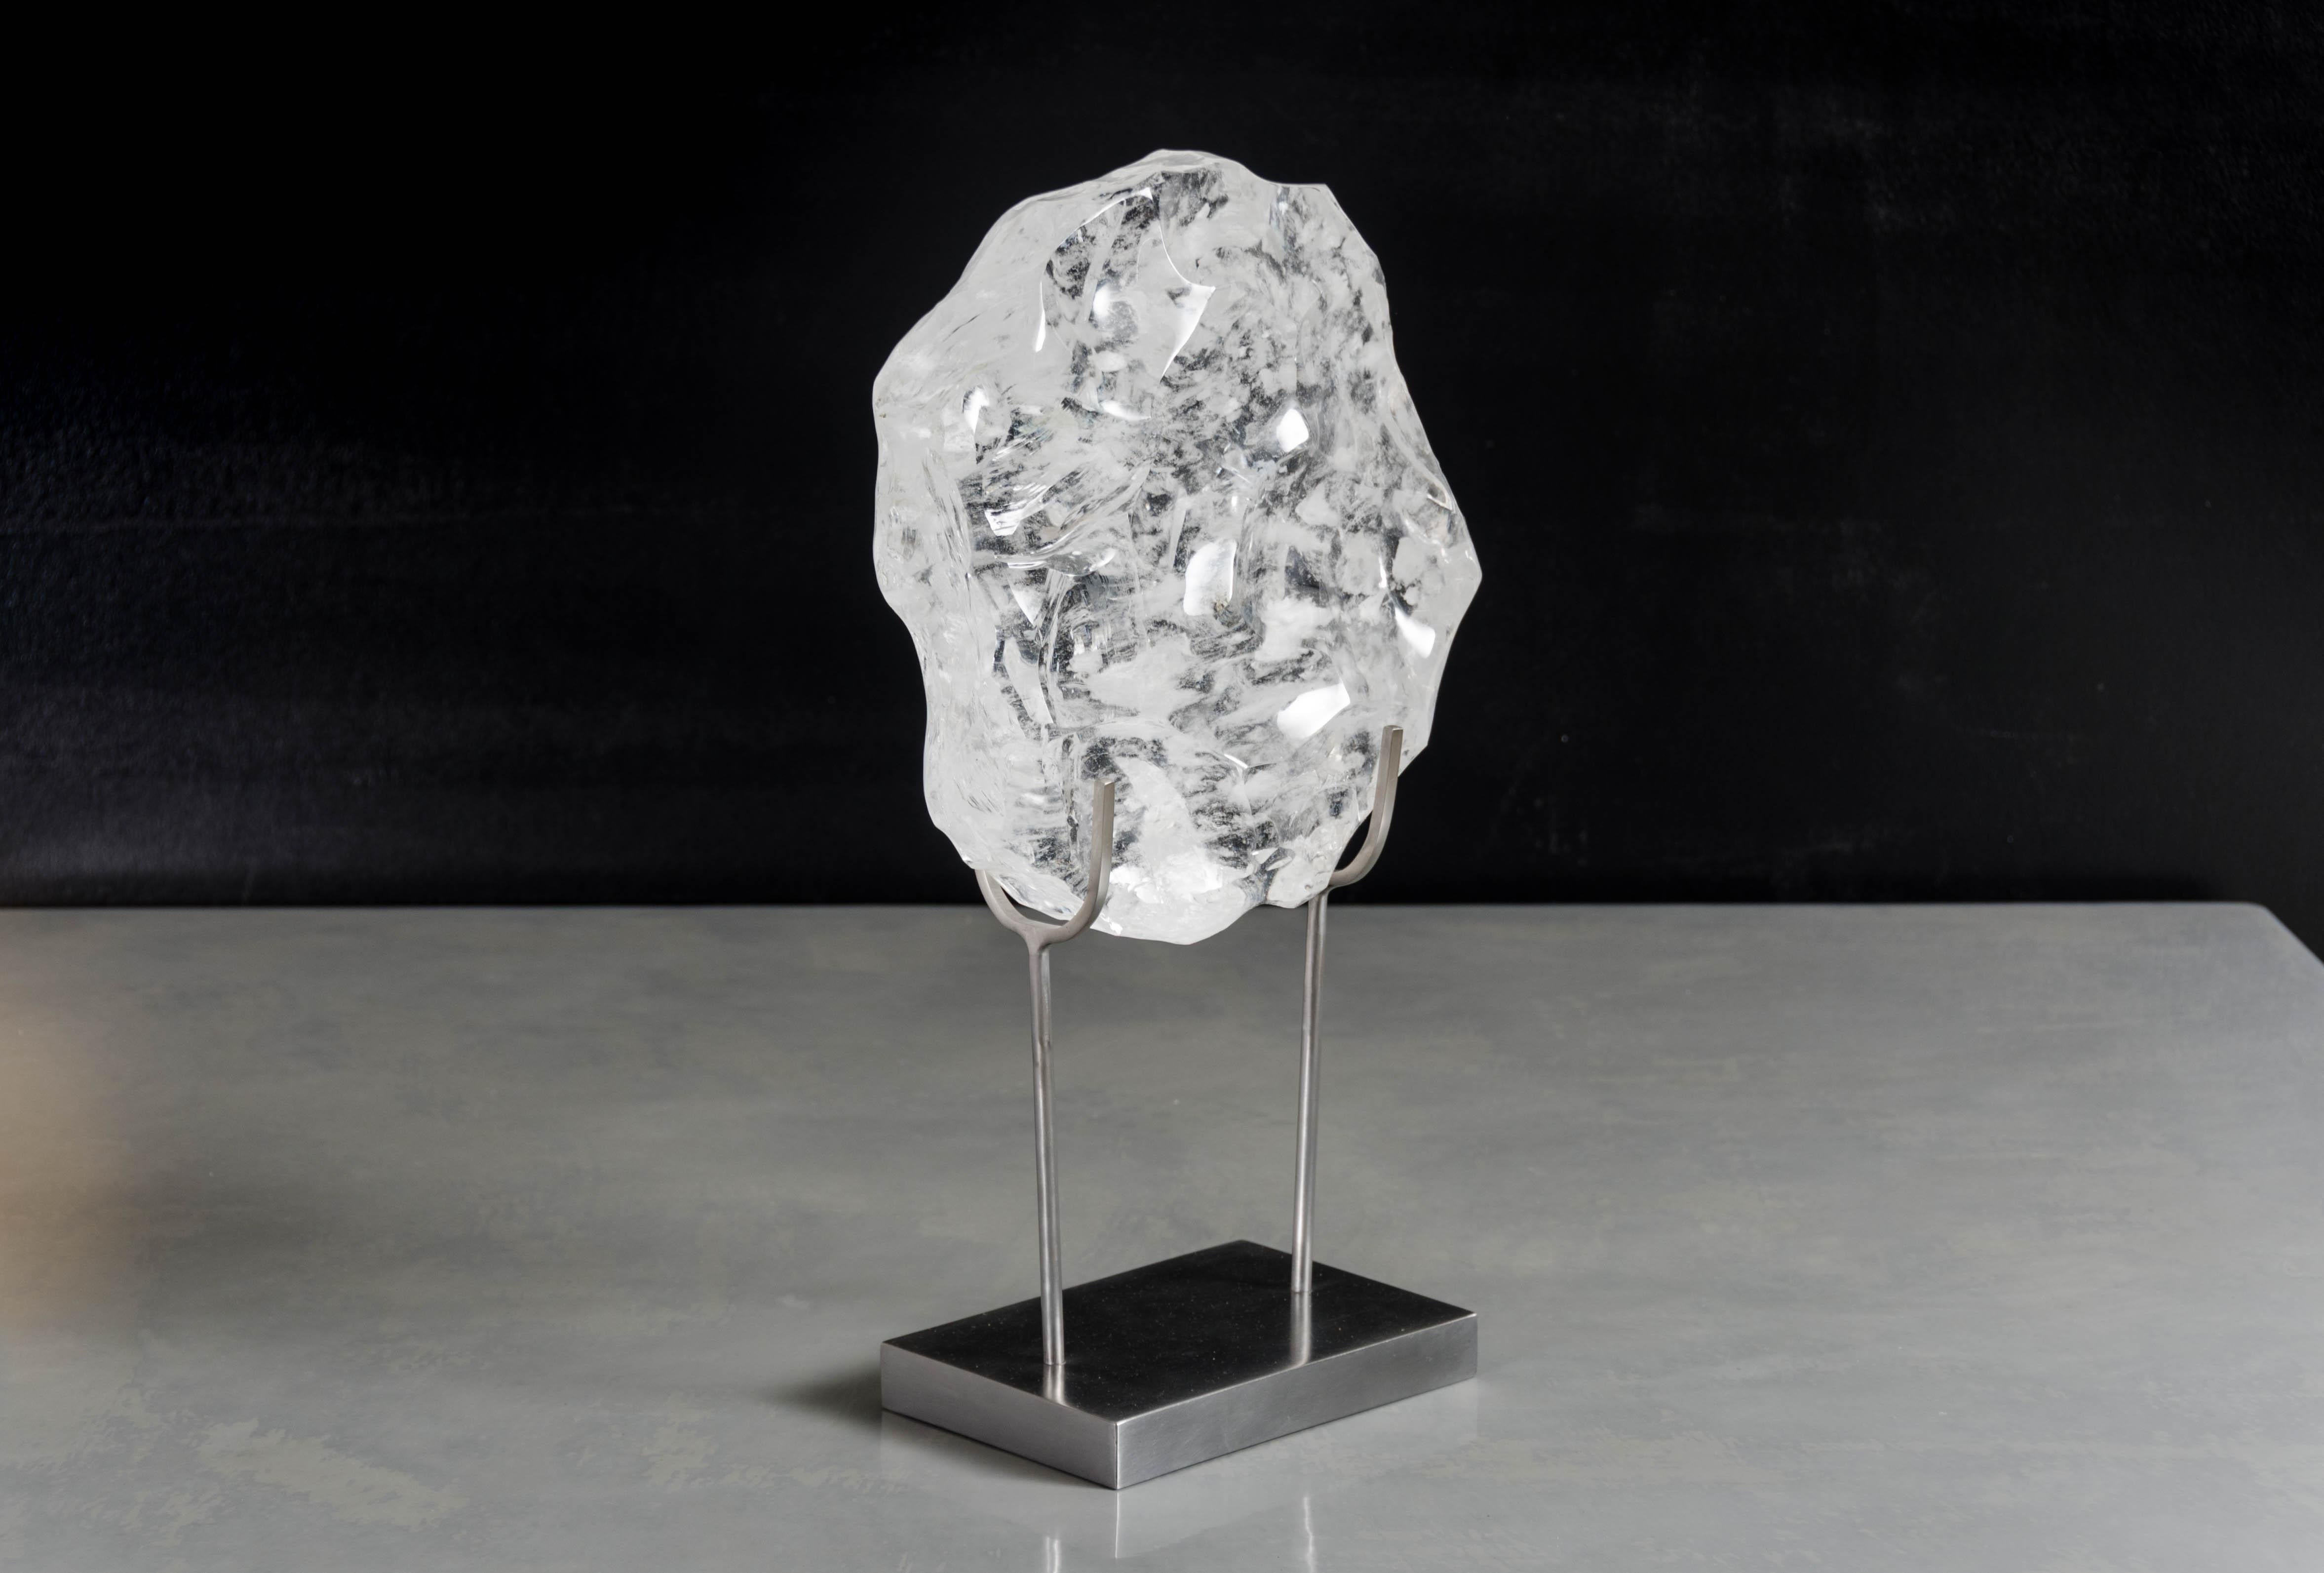 Bi Sculpture sur support en acier (moyen)
Cristal
Sculpté à la main
Acier
Sculpture contemporaine
Edition limitée

Les formes et les inclusions des cristaux varient.
 